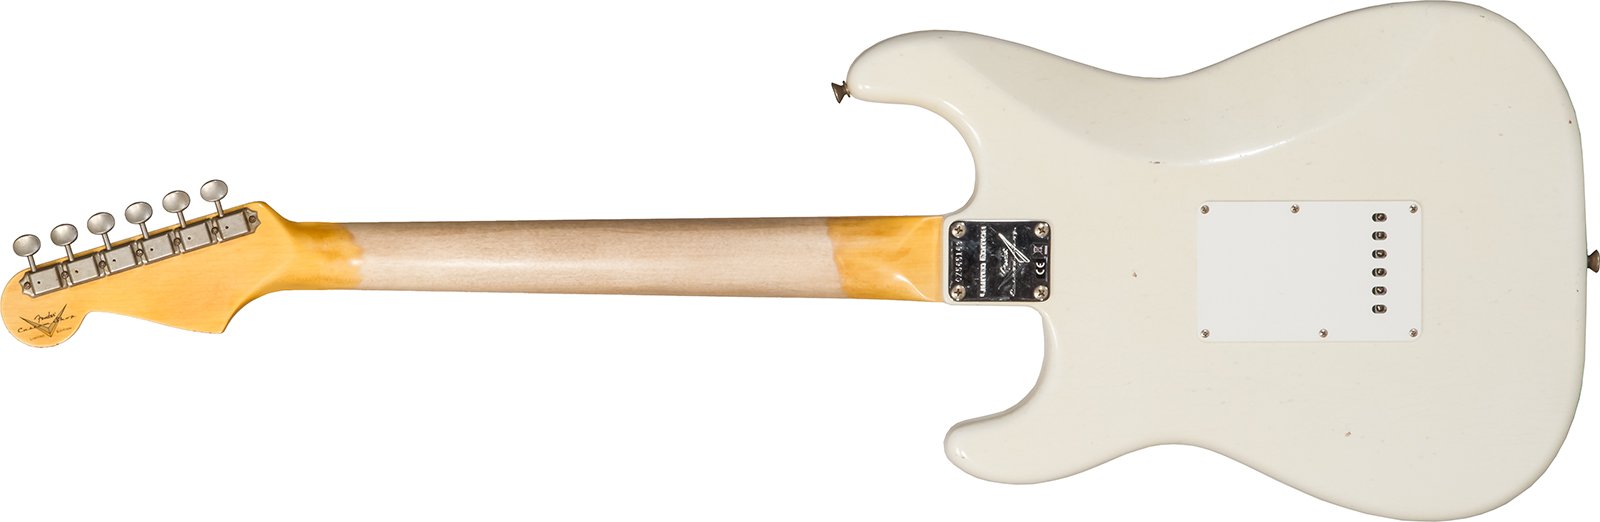 Fender Custom Shop Strat 1962/63 3s Trem Rw #cz565163 - Journeyman Relic Olympic White - Elektrische gitaar in Str-vorm - Variation 1